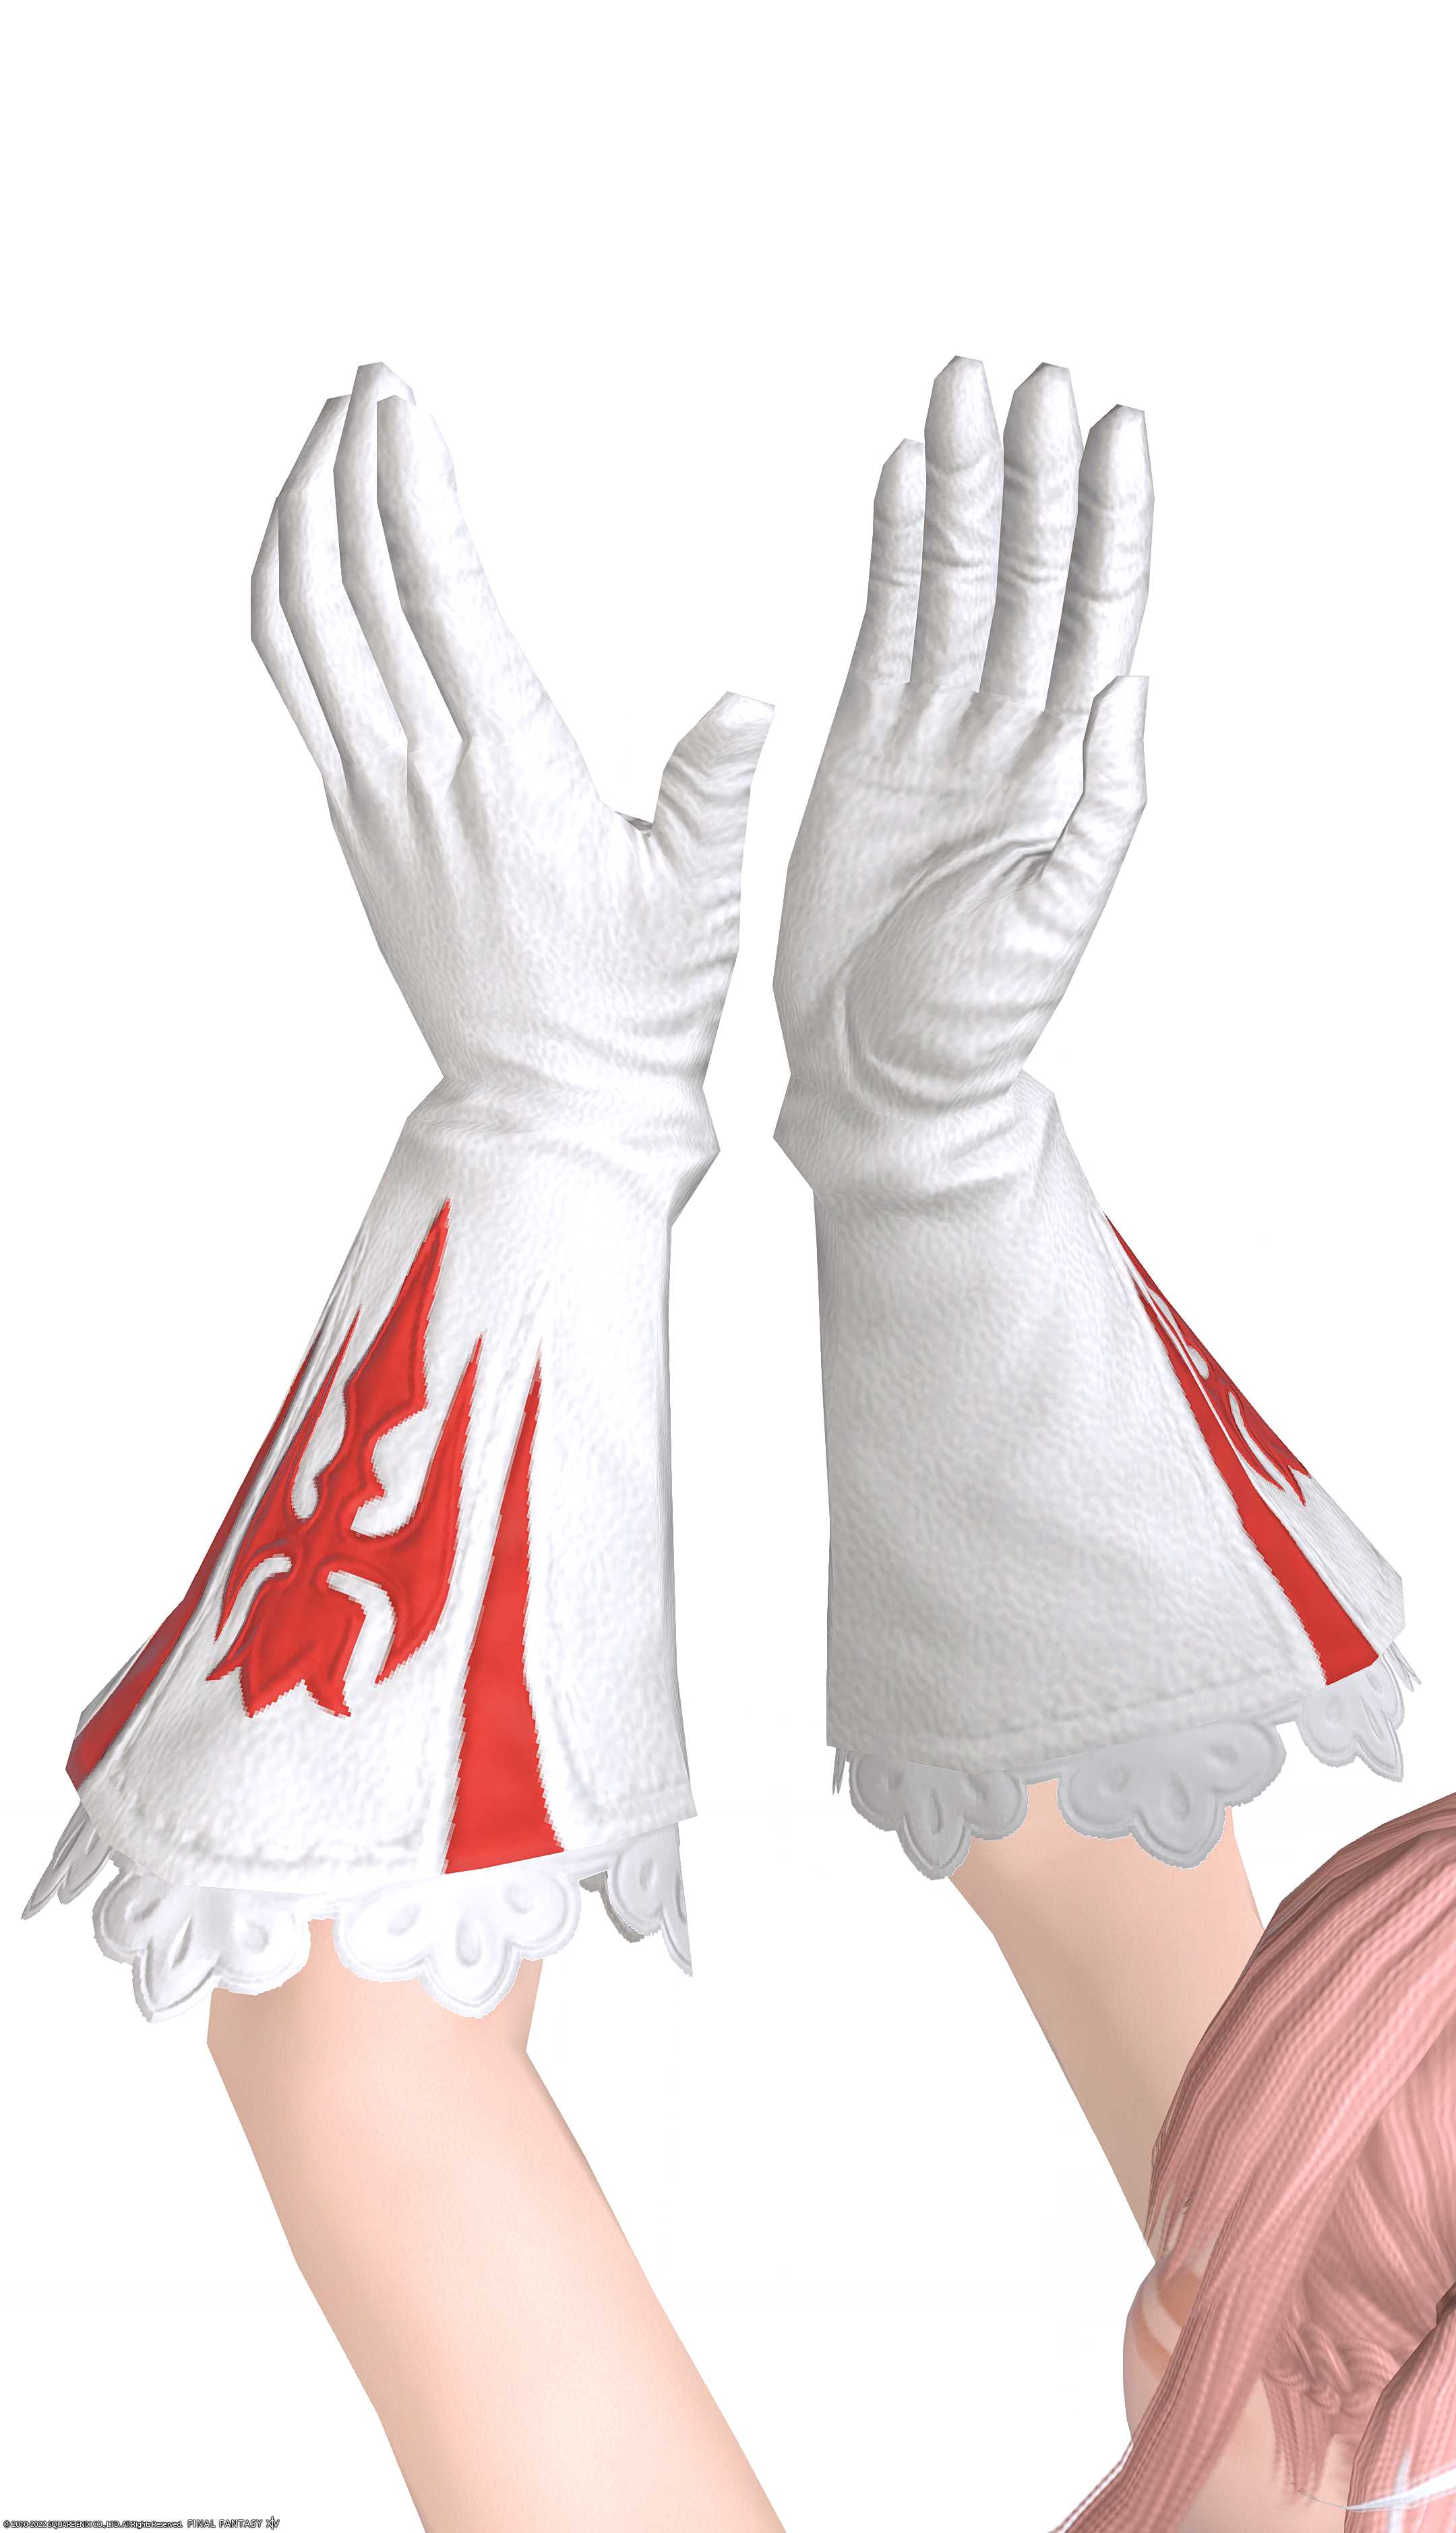 イシュガルディアン・チャプレングローブ | FF14ミラプリ - Ishgardian Chaplain's Gloves - 手袋/グローブ